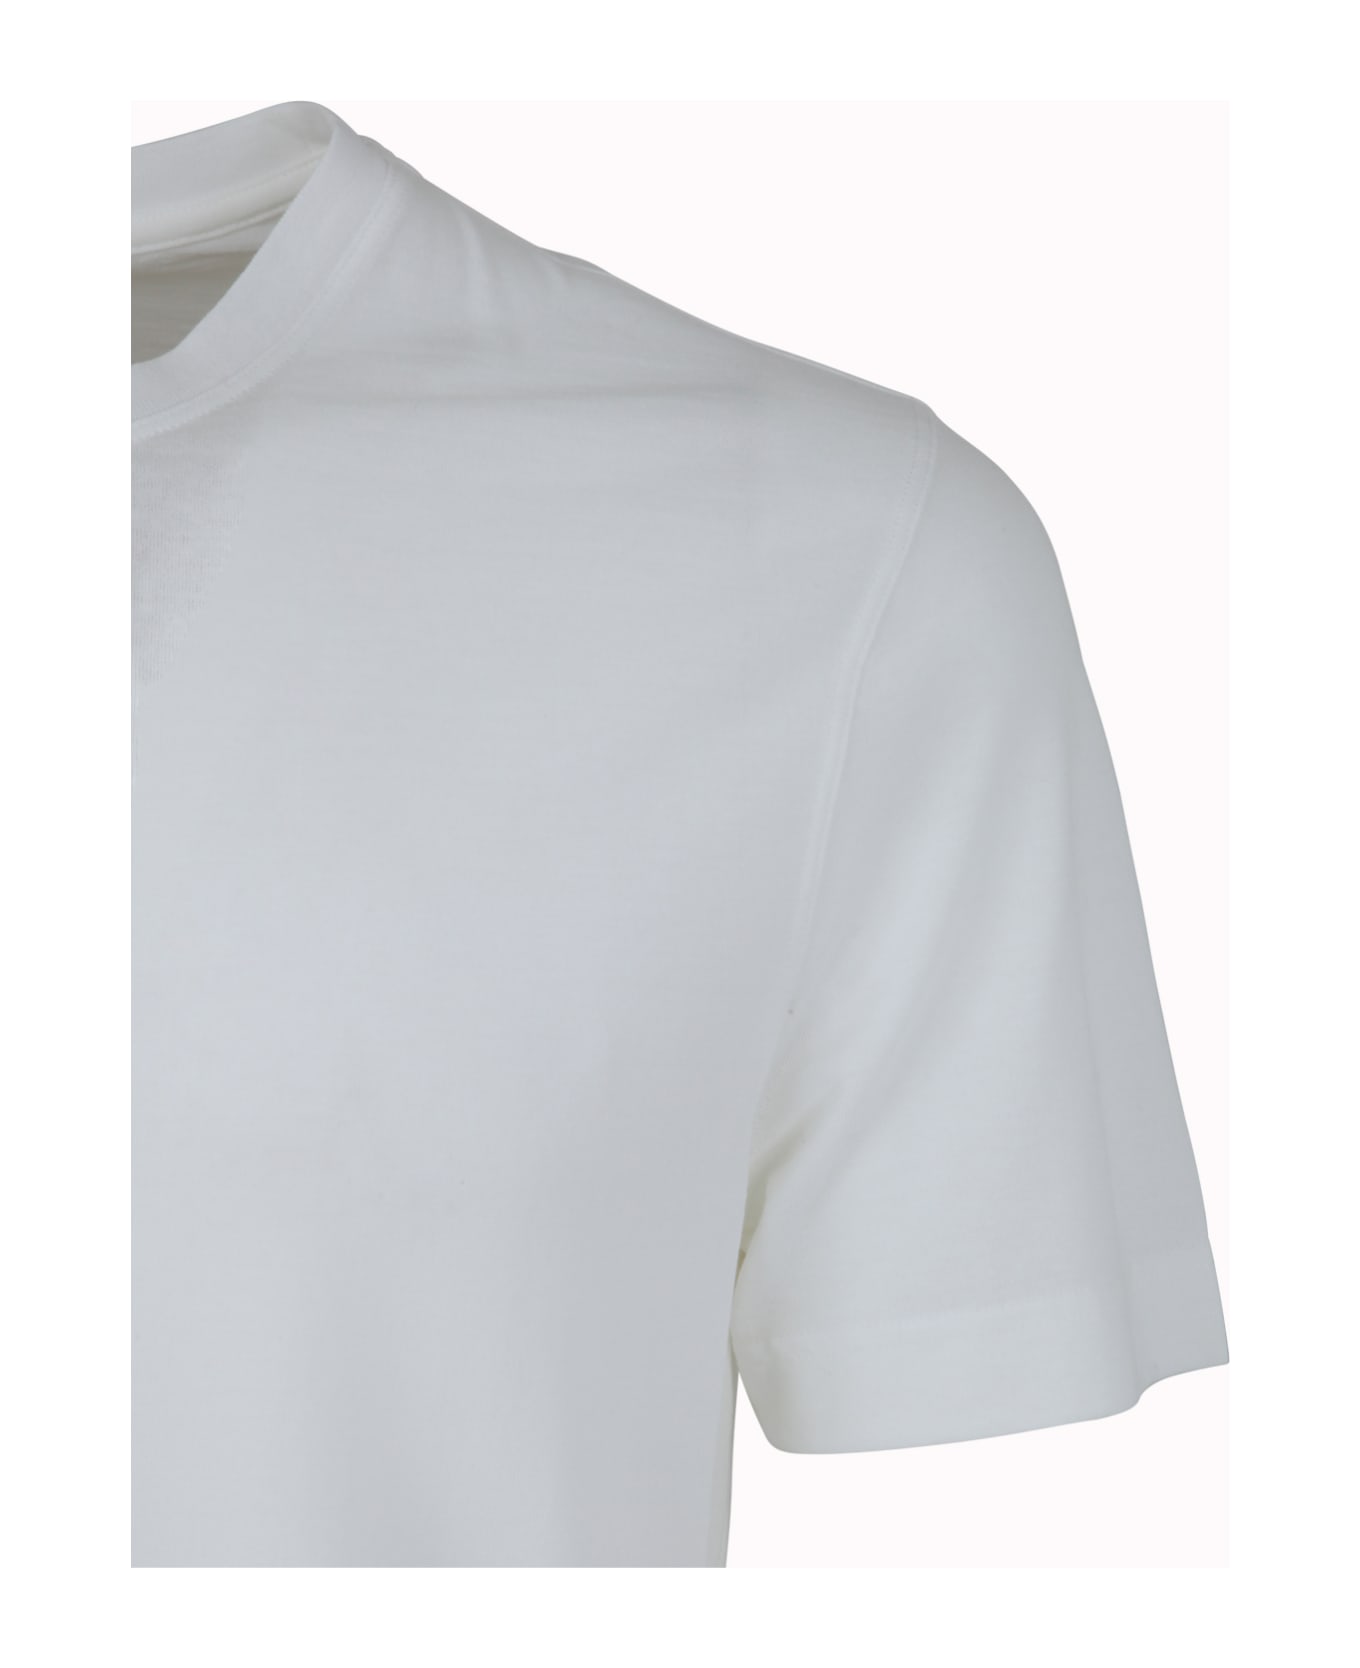 Zanone Short Sleeves T-shirt - White